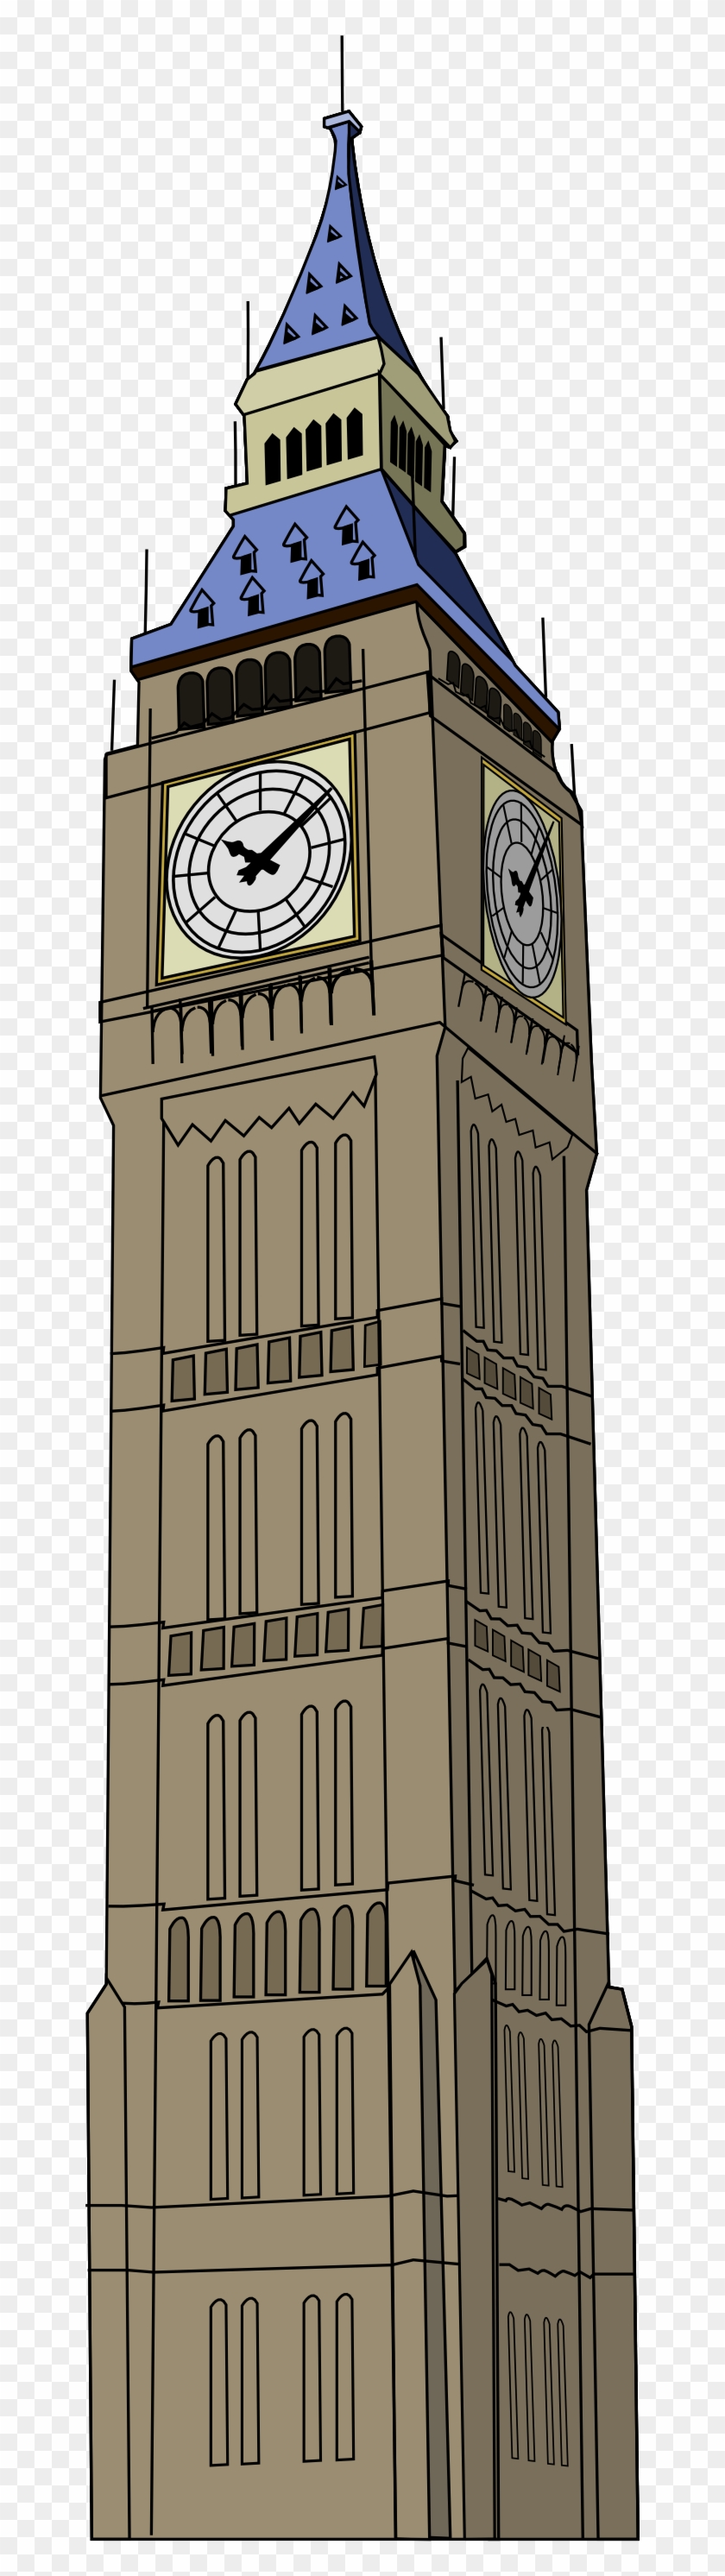 Drawing Of Big Ben Clock - Clock Tower Transparent #954202